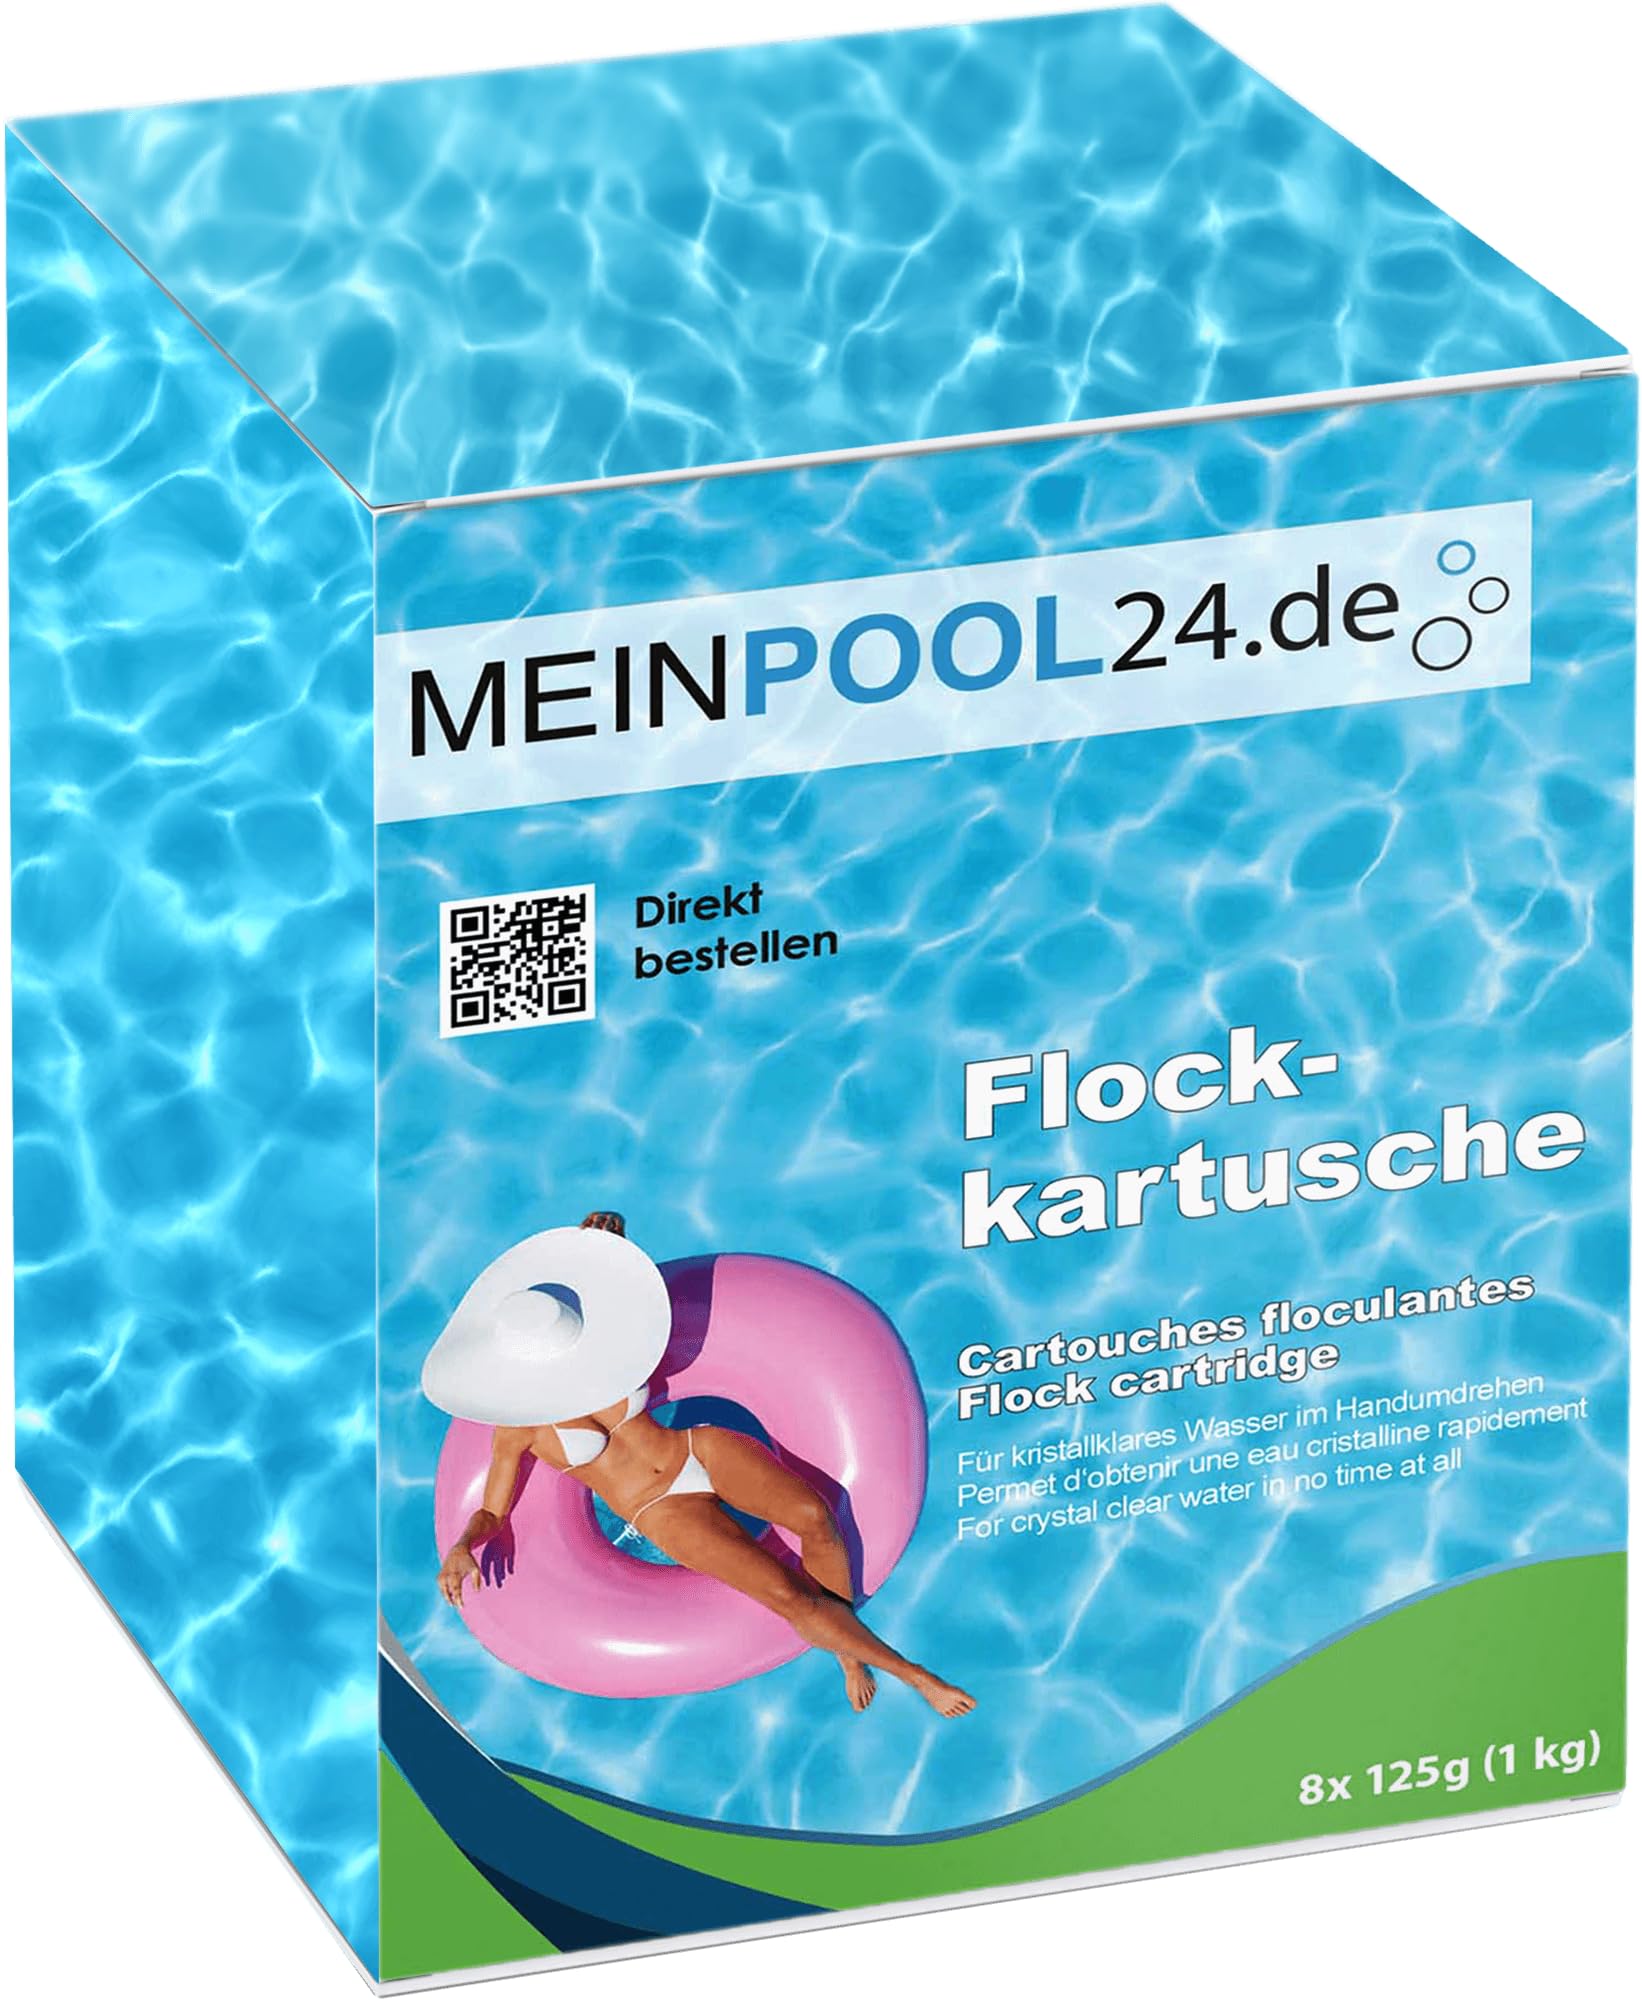 Meinpool24.de 4x1 kg Flockkartuschen Flockungs-Kartuschen für kristallklares Wasser entfernt feinste Schmutzteilchen im Pool